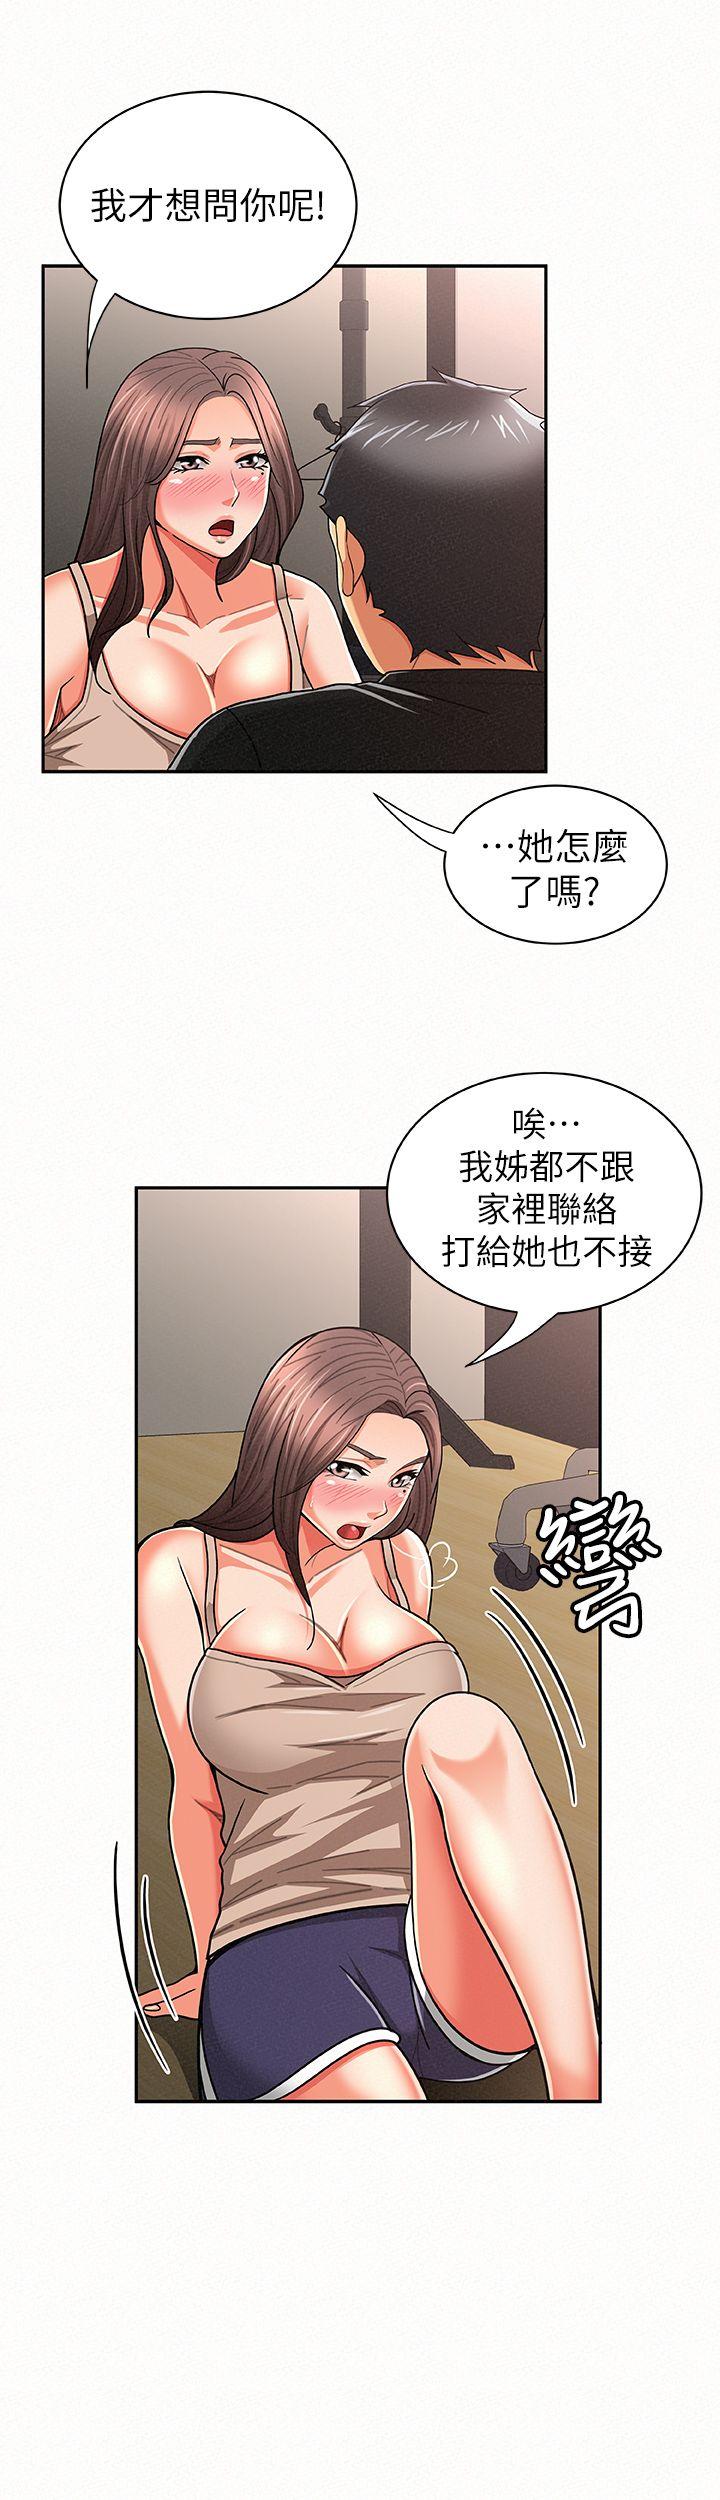 韩国污漫画 報告夫人 第20话-你跟仁惠进展到哪里了? 24